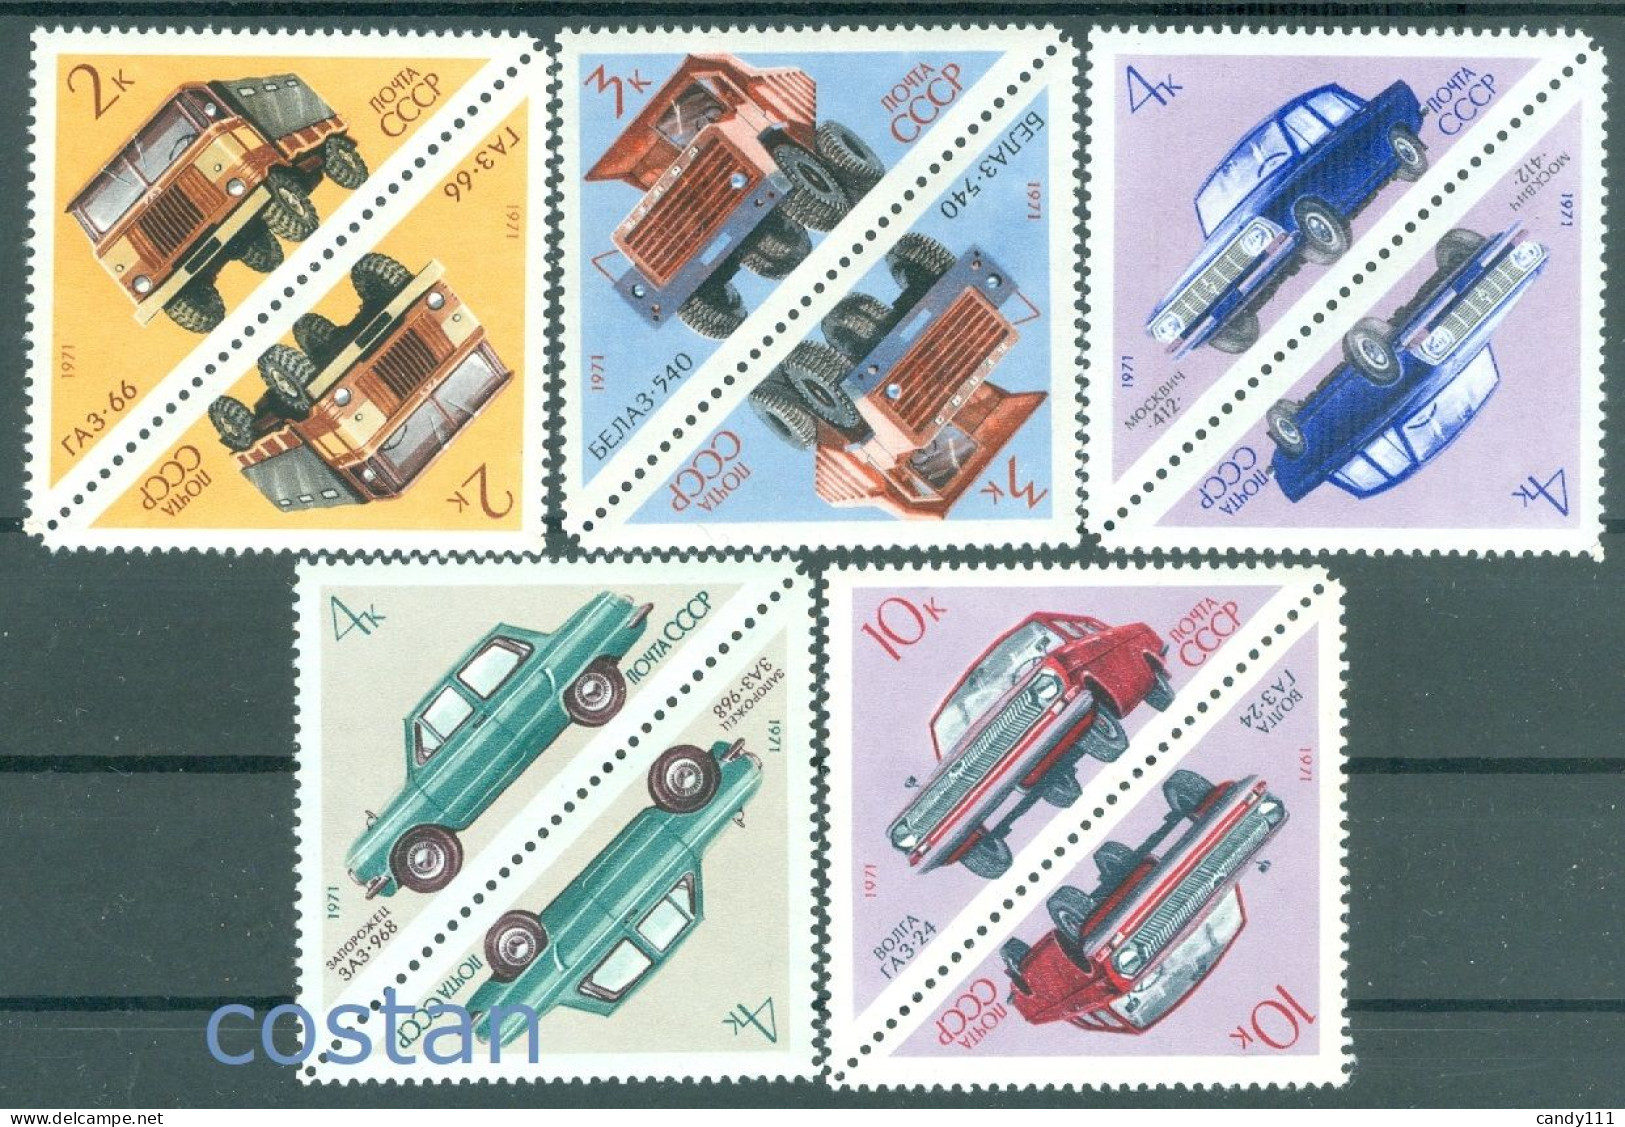 1971 Automobile,Volga,Moskvich,ZAZ Zaporozhets/Ukraine,GAZ Truck,Russia,3878/MNH - Unused Stamps